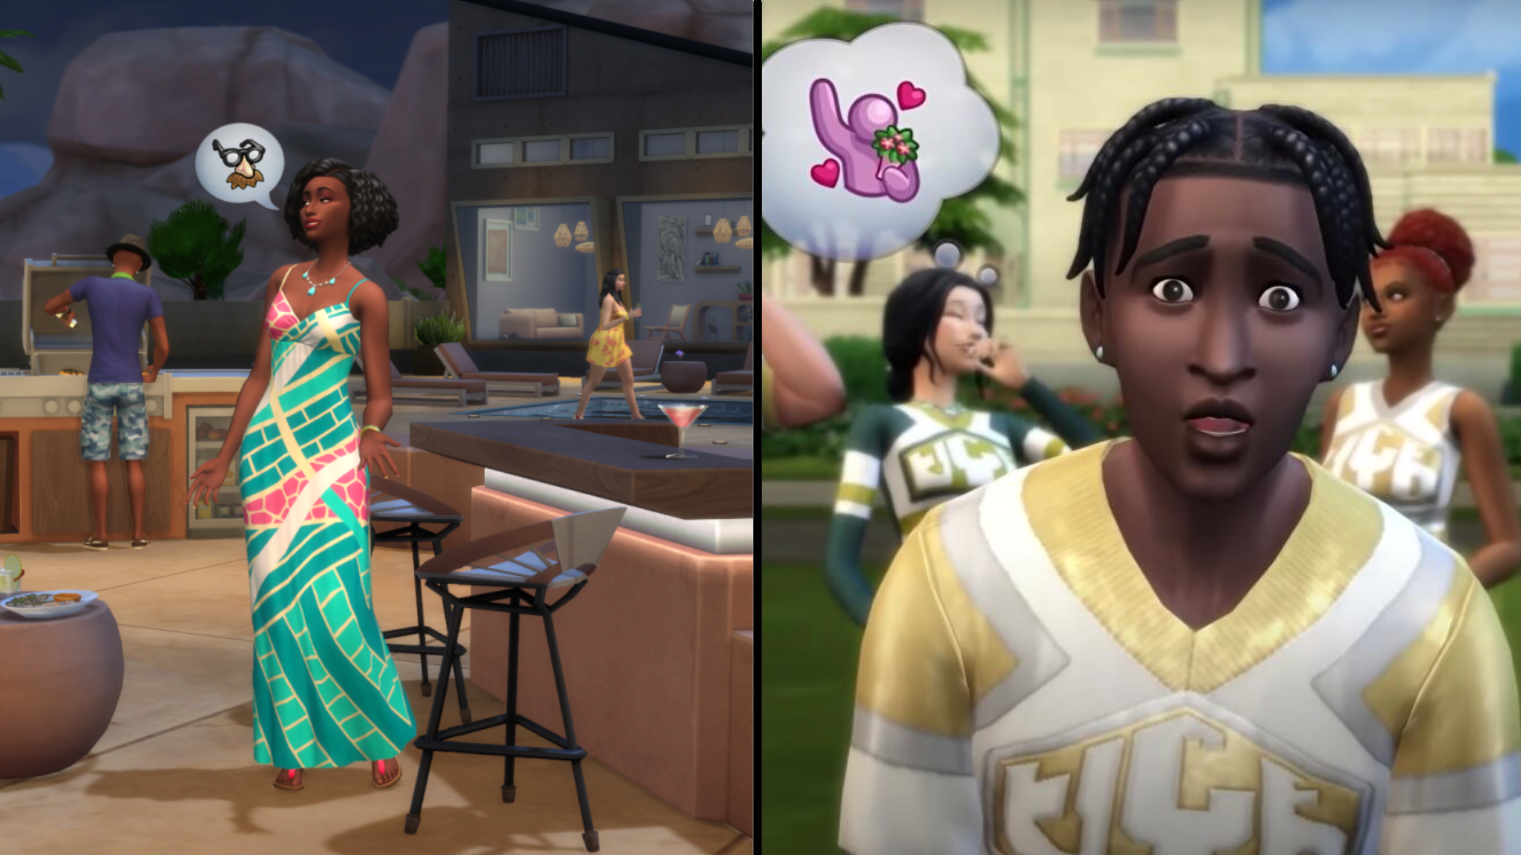 รีวิวเกมThe Sims™ 4 เปิดให้เล่นฟรีอย่างเป็นทางการ มือใหม่มีอะไรต้องรู้บ้างในเกมนี้1